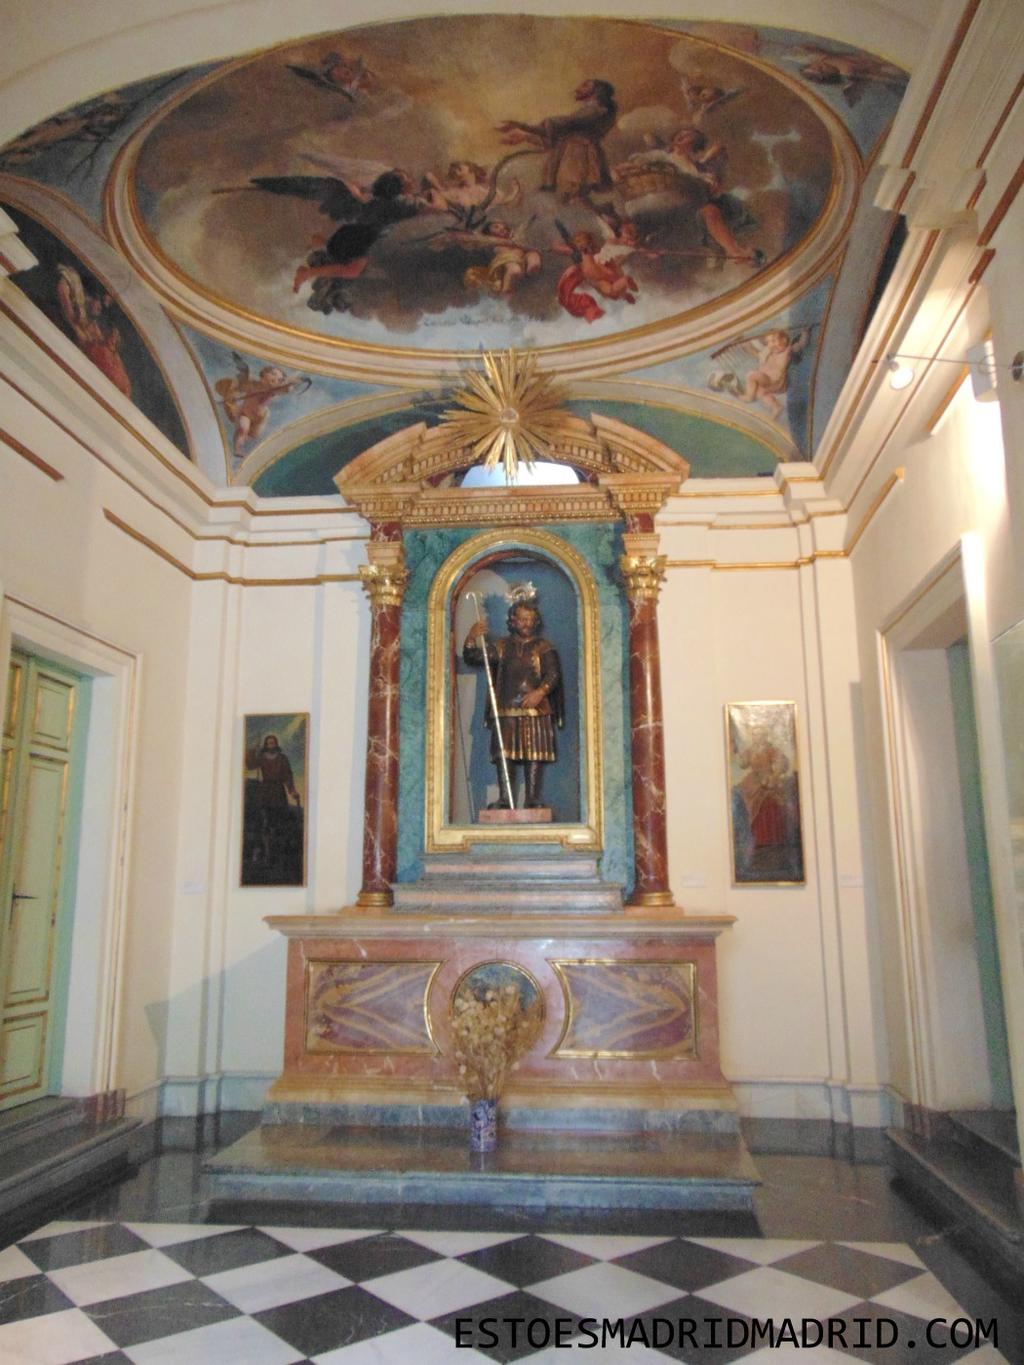 Foi construído no início do século XVI com estilo renascentista e nele se pode ver (na parte superior), estátuas dos santos da casa.